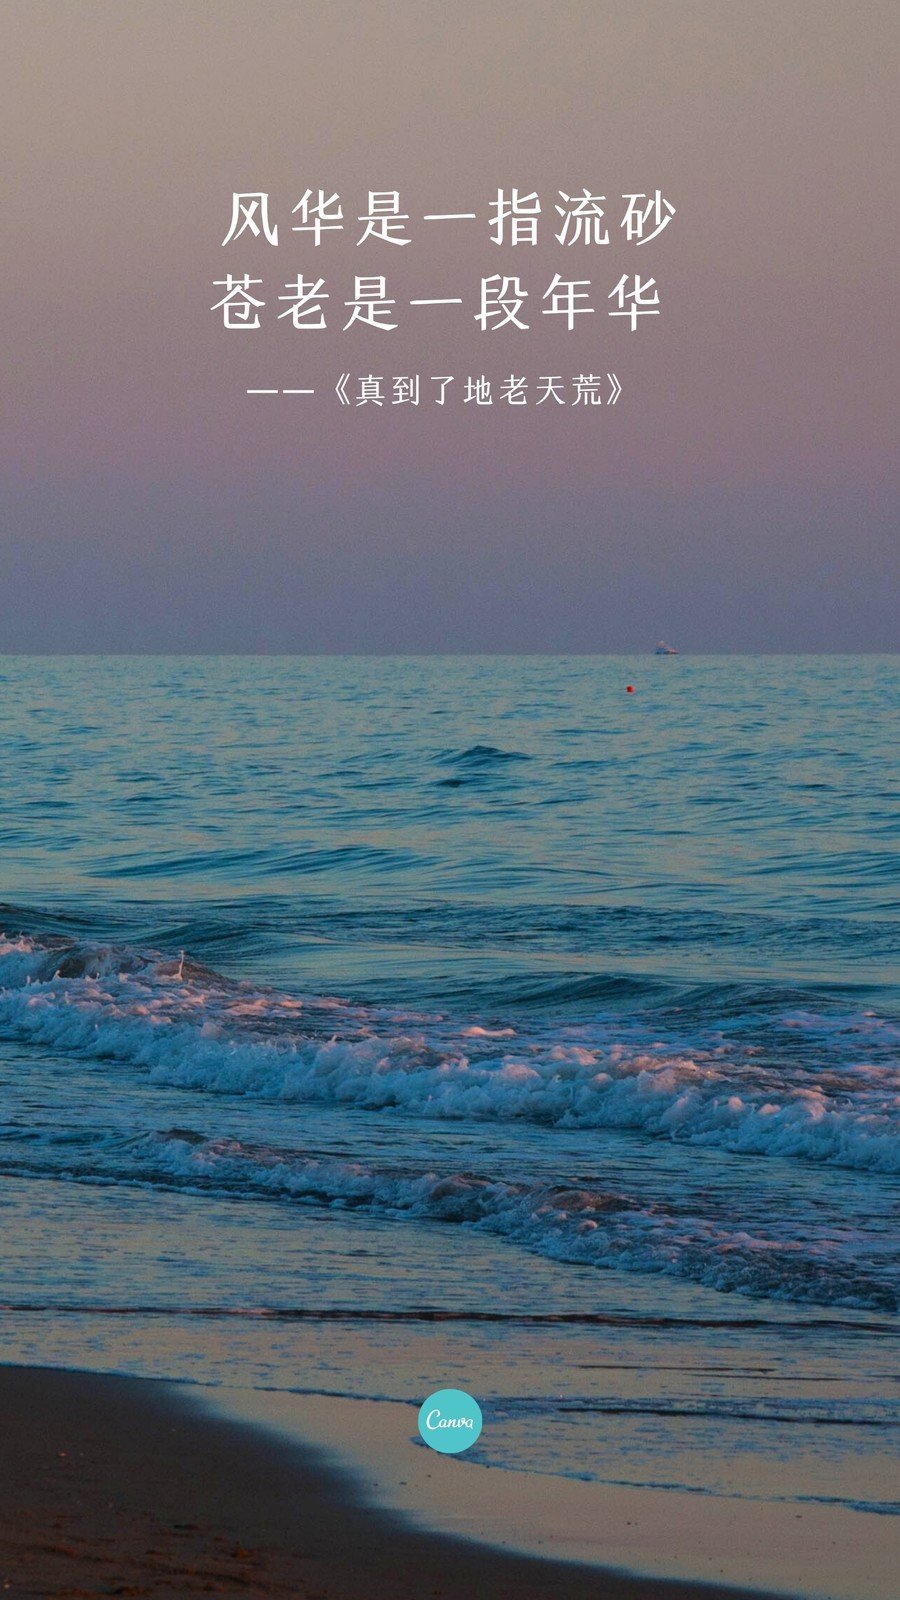 紫蓝色蓝色大海手机壁纸照片个人中文手机壁纸